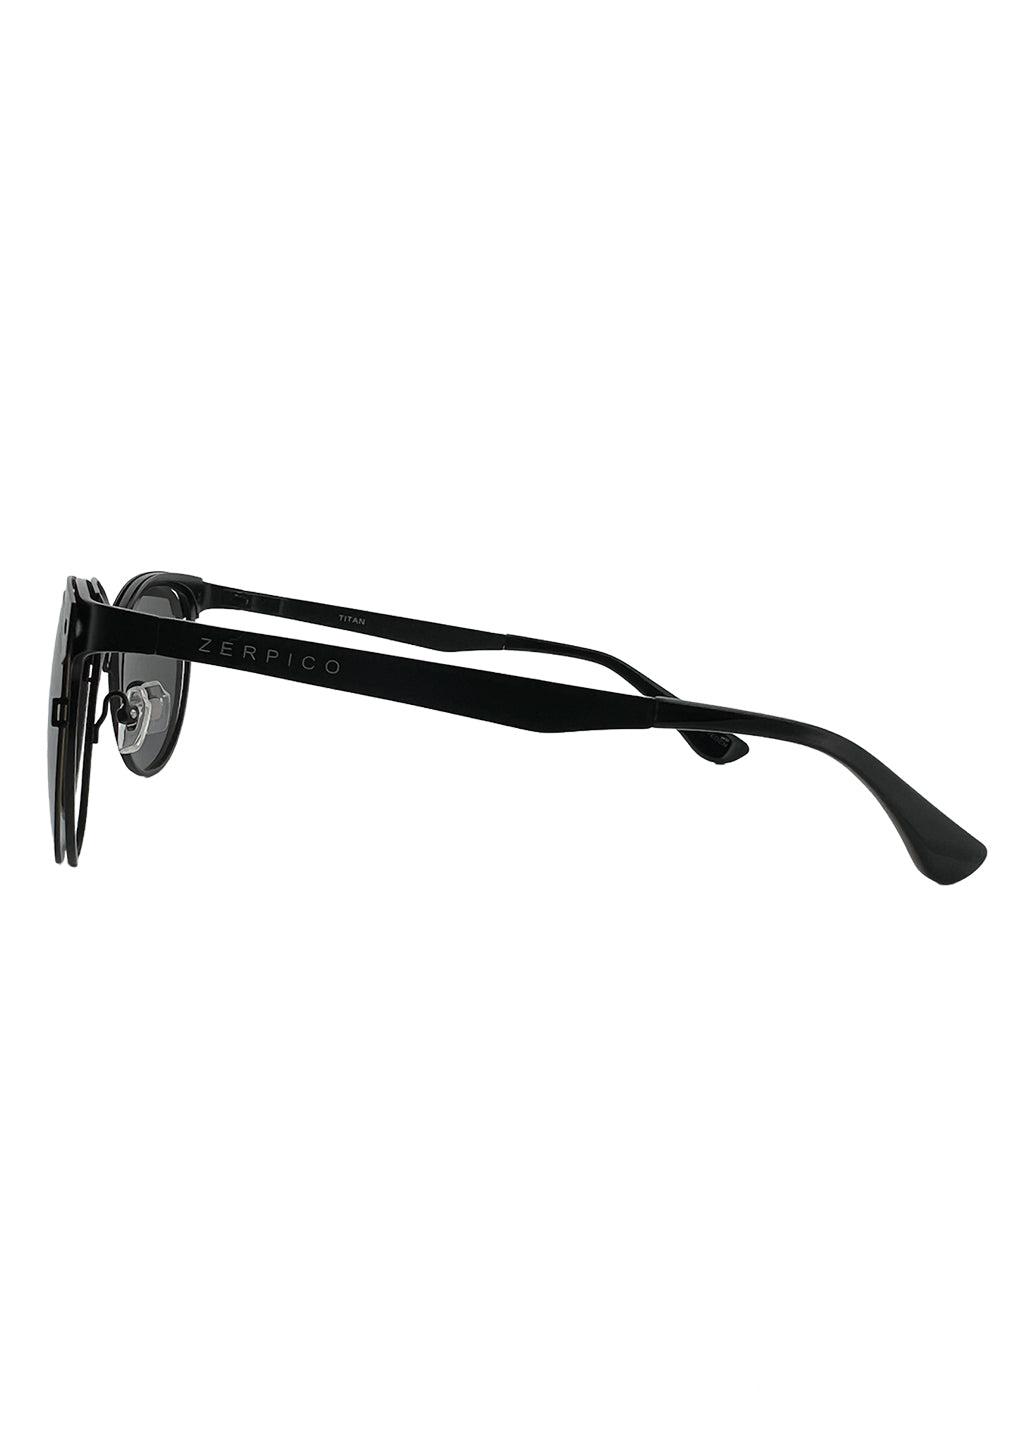 Clubmaster Sunglasses V2 - Studio shot of the black fram the side.